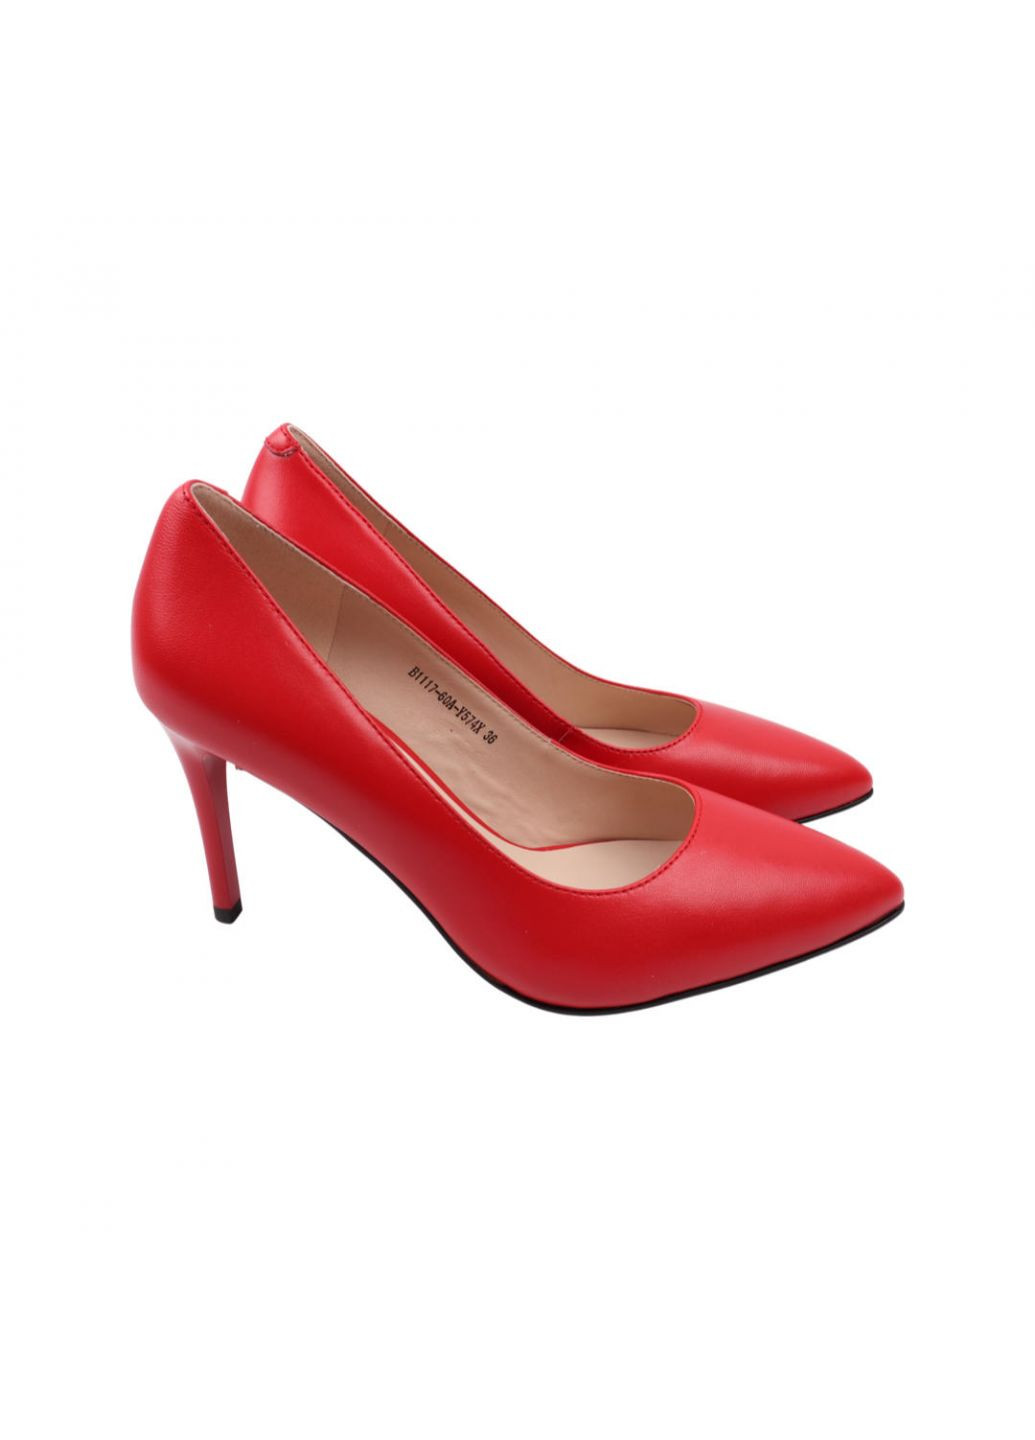 Туфлі жіночі червоні натуральна шкіра Geronea 995-22dt (257440315)